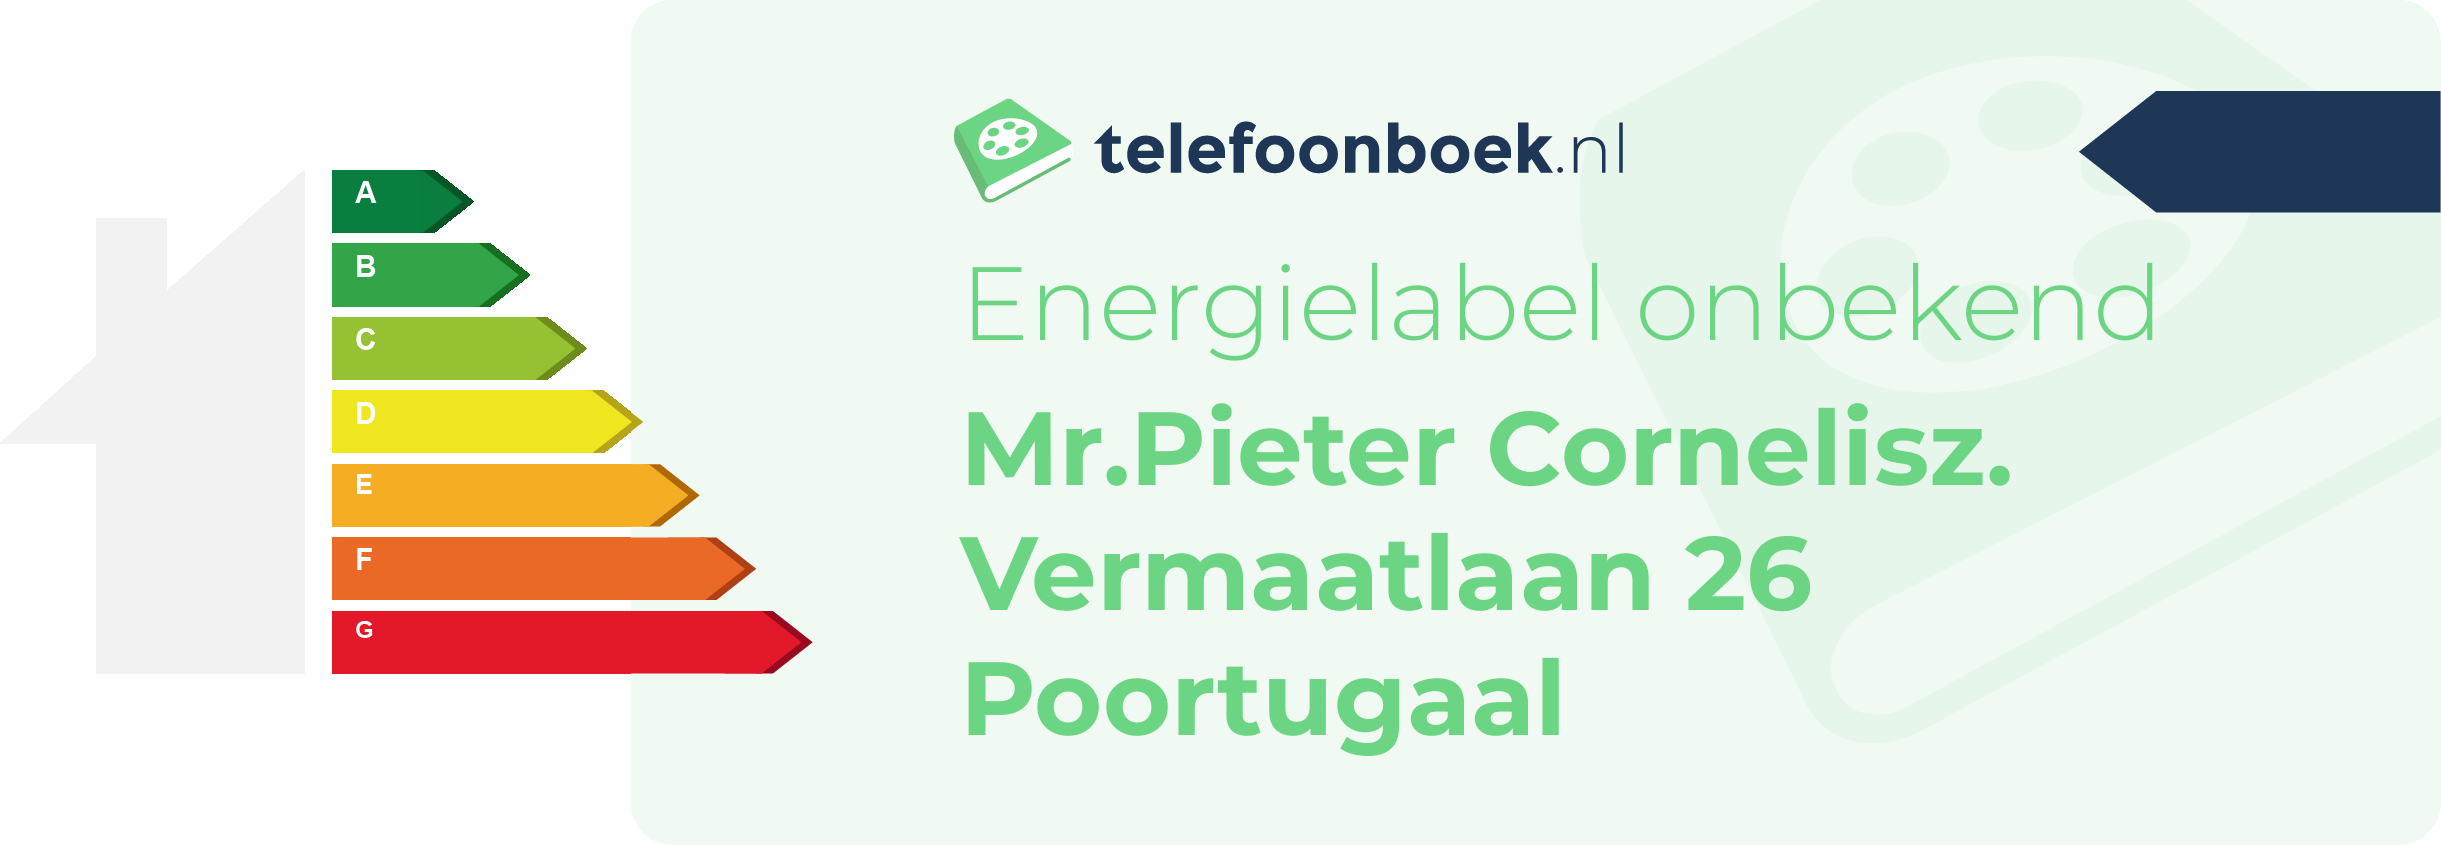 Energielabel Mr.Pieter Cornelisz. Vermaatlaan 26 Poortugaal